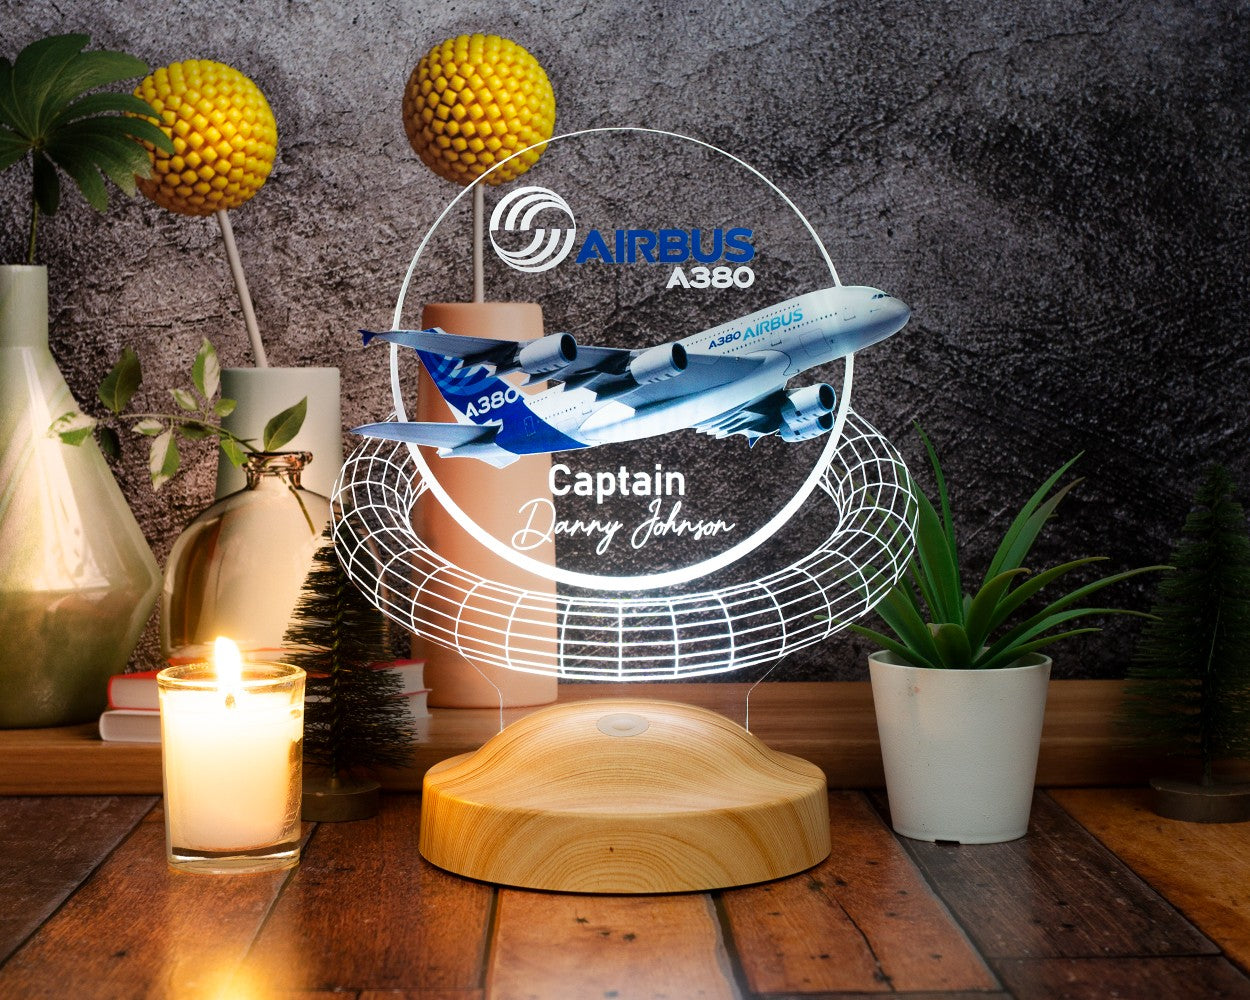 Passagierflugzeug Reiseflugzeug, 3D Illusionslampe, Geschenk für Reisende, für Piloten, für Flugzeugliebhaber, Geschenke für Weltreisende